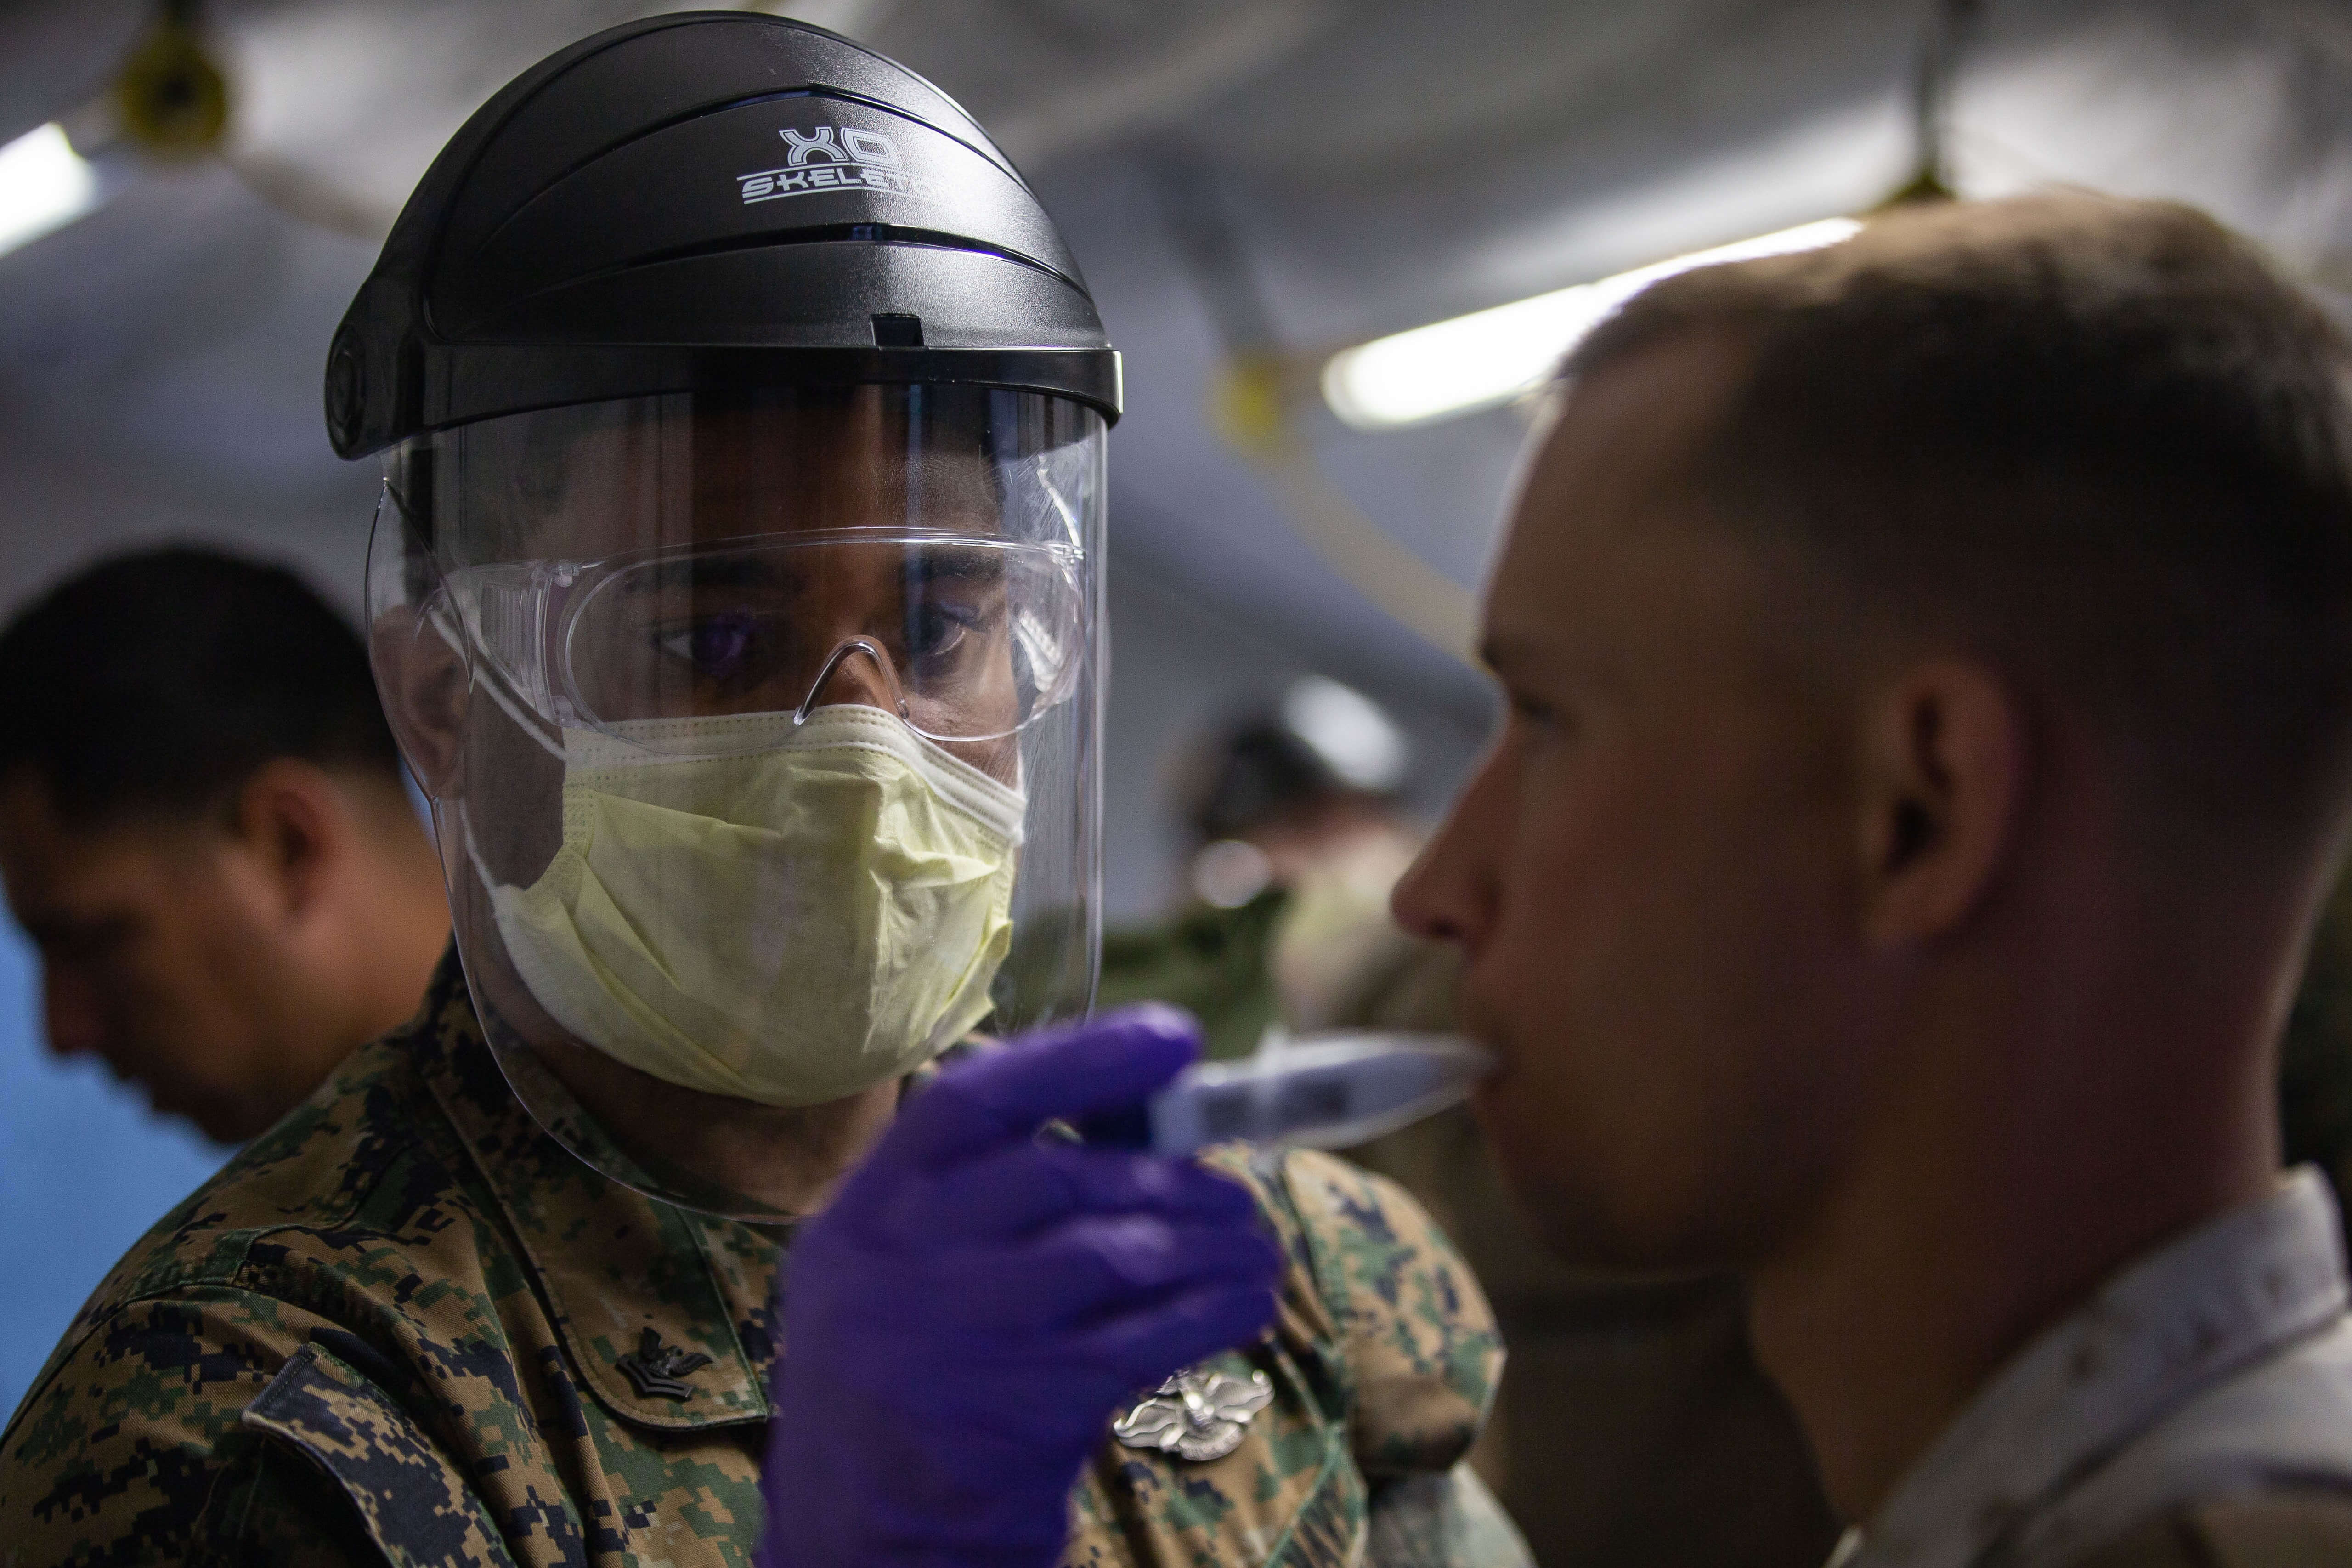 Een Amerikaanse marinier wordt getest op temperatuur om verspreiding van het coronavirus te voorkomen. © Marines - Flickr